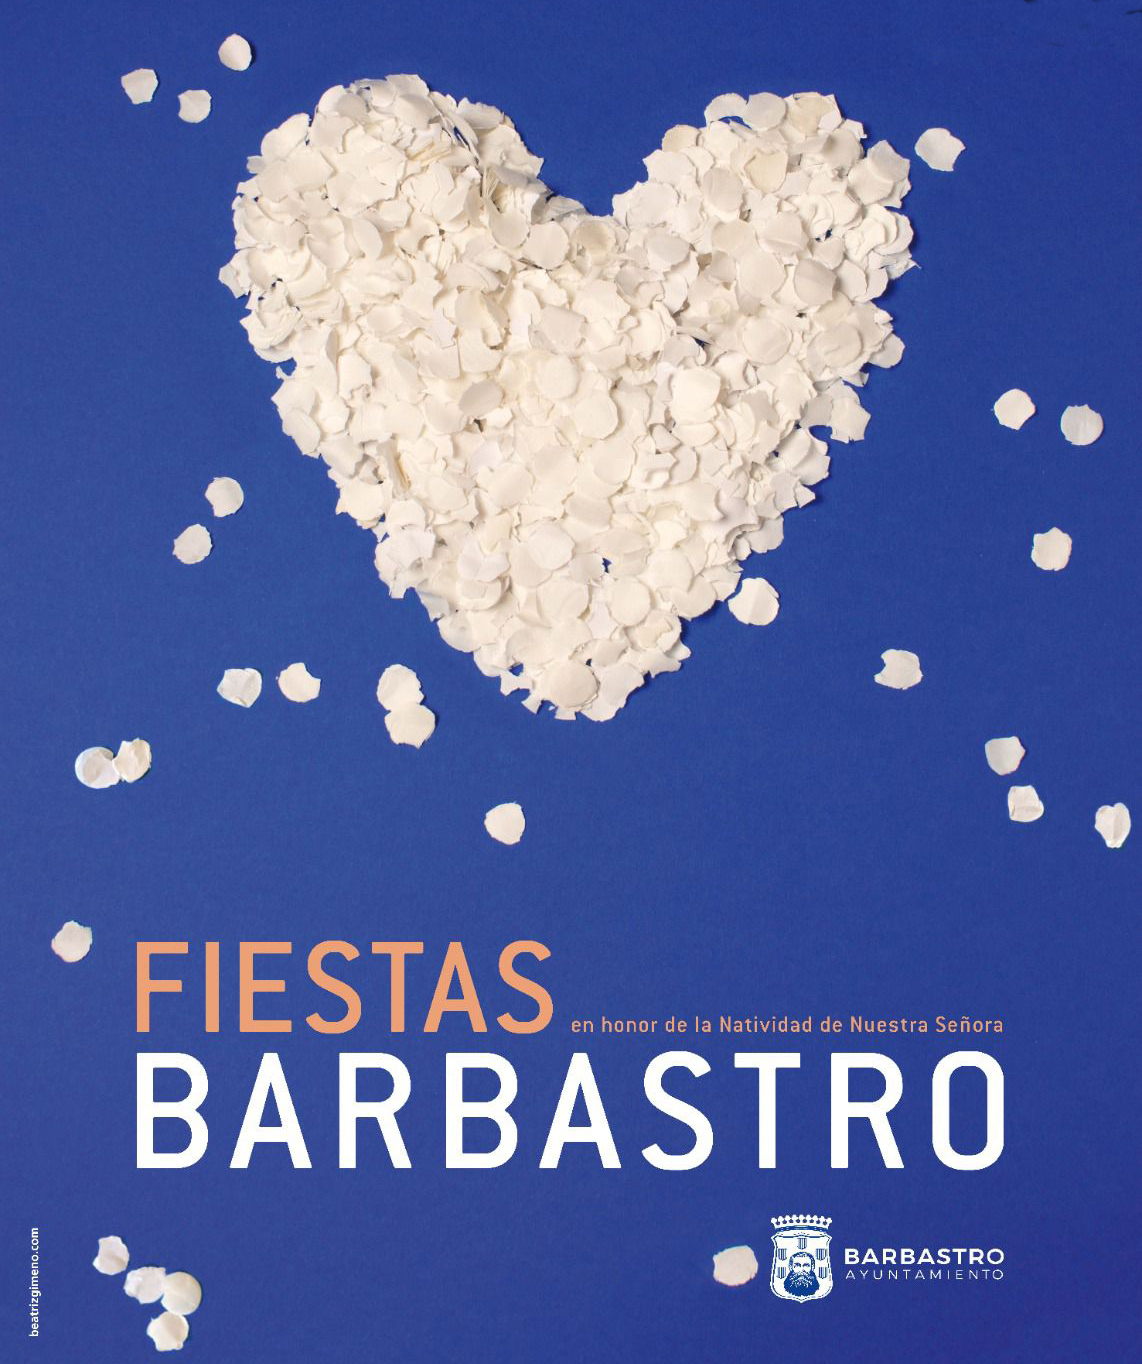 Cartel Fiestas de Barbastro 2023. Ayuntamiento de Barbastro